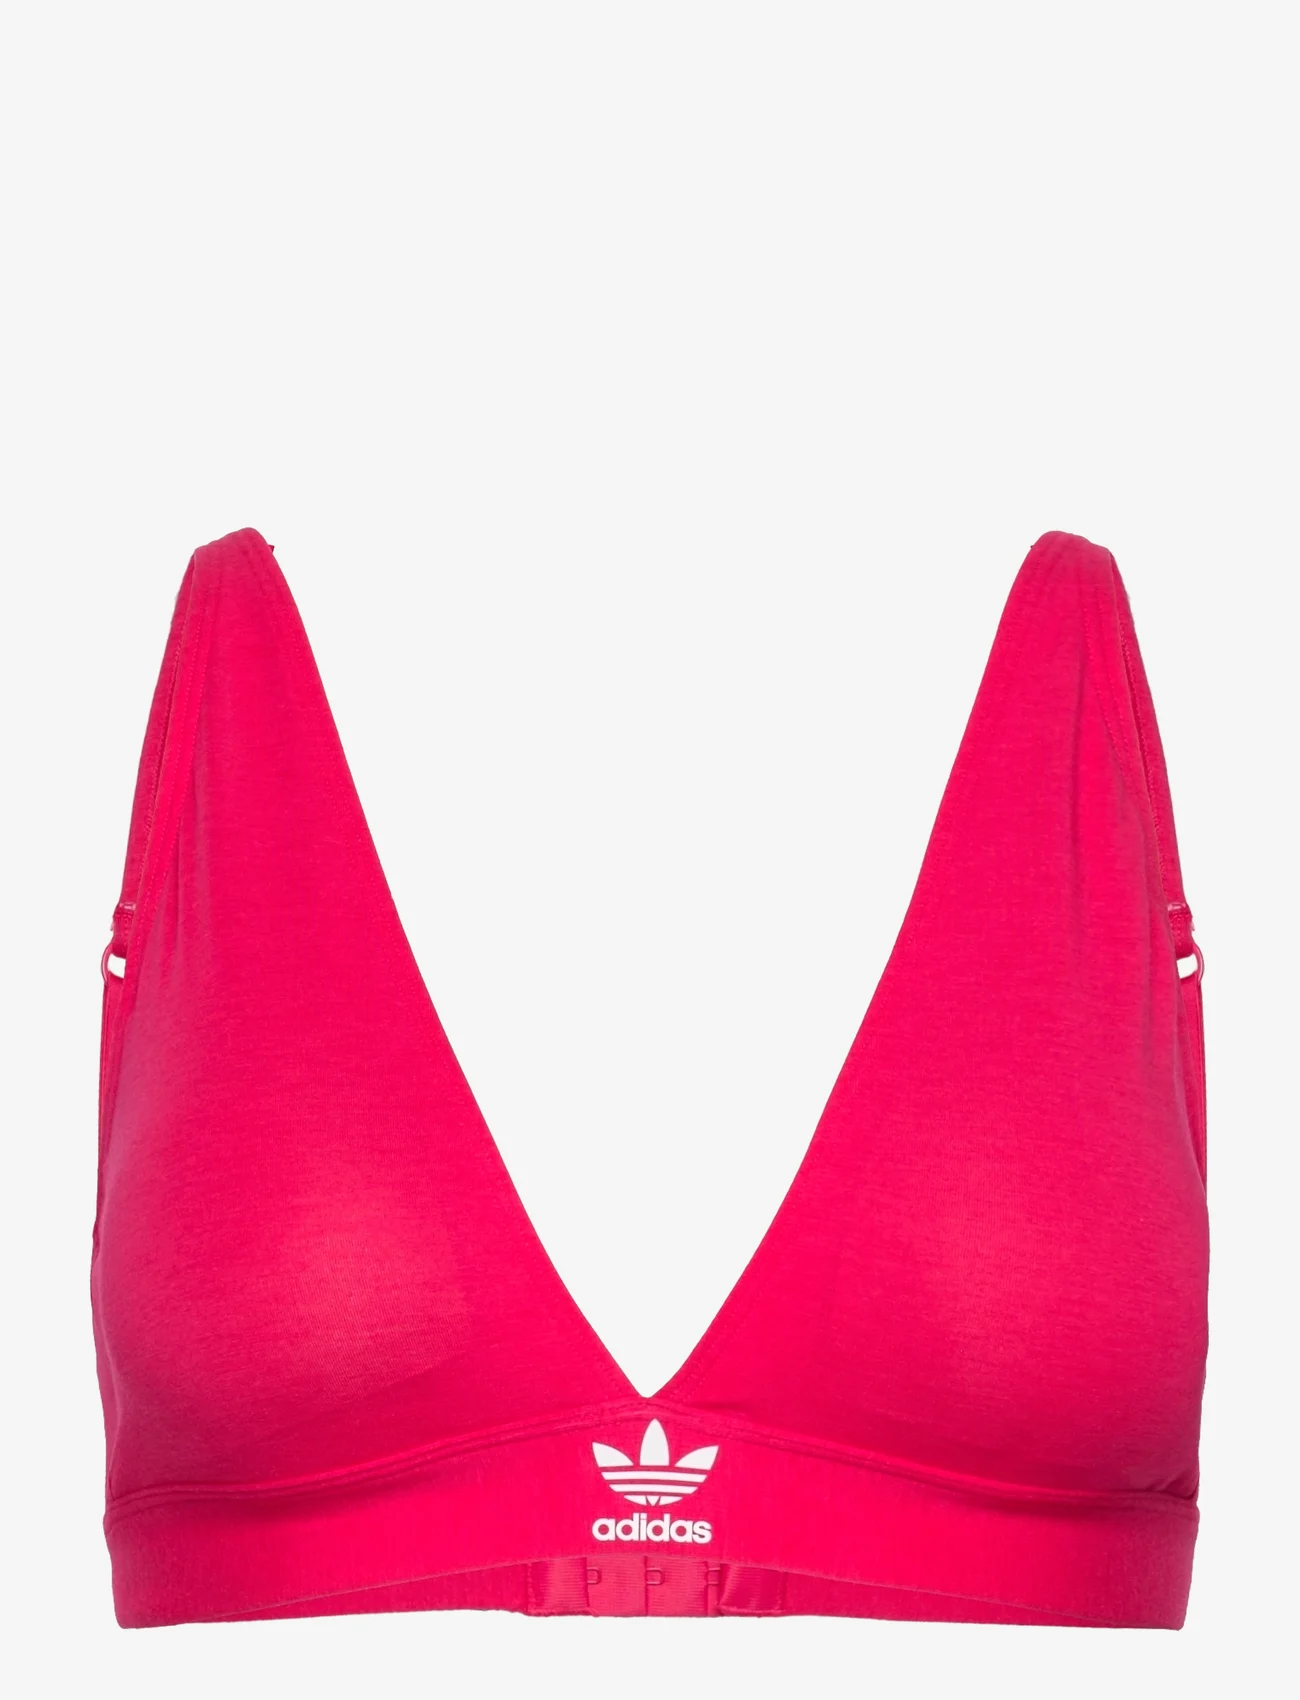 adidas Originals Underwear - Triangle Bra - bralette - aubergine - 0